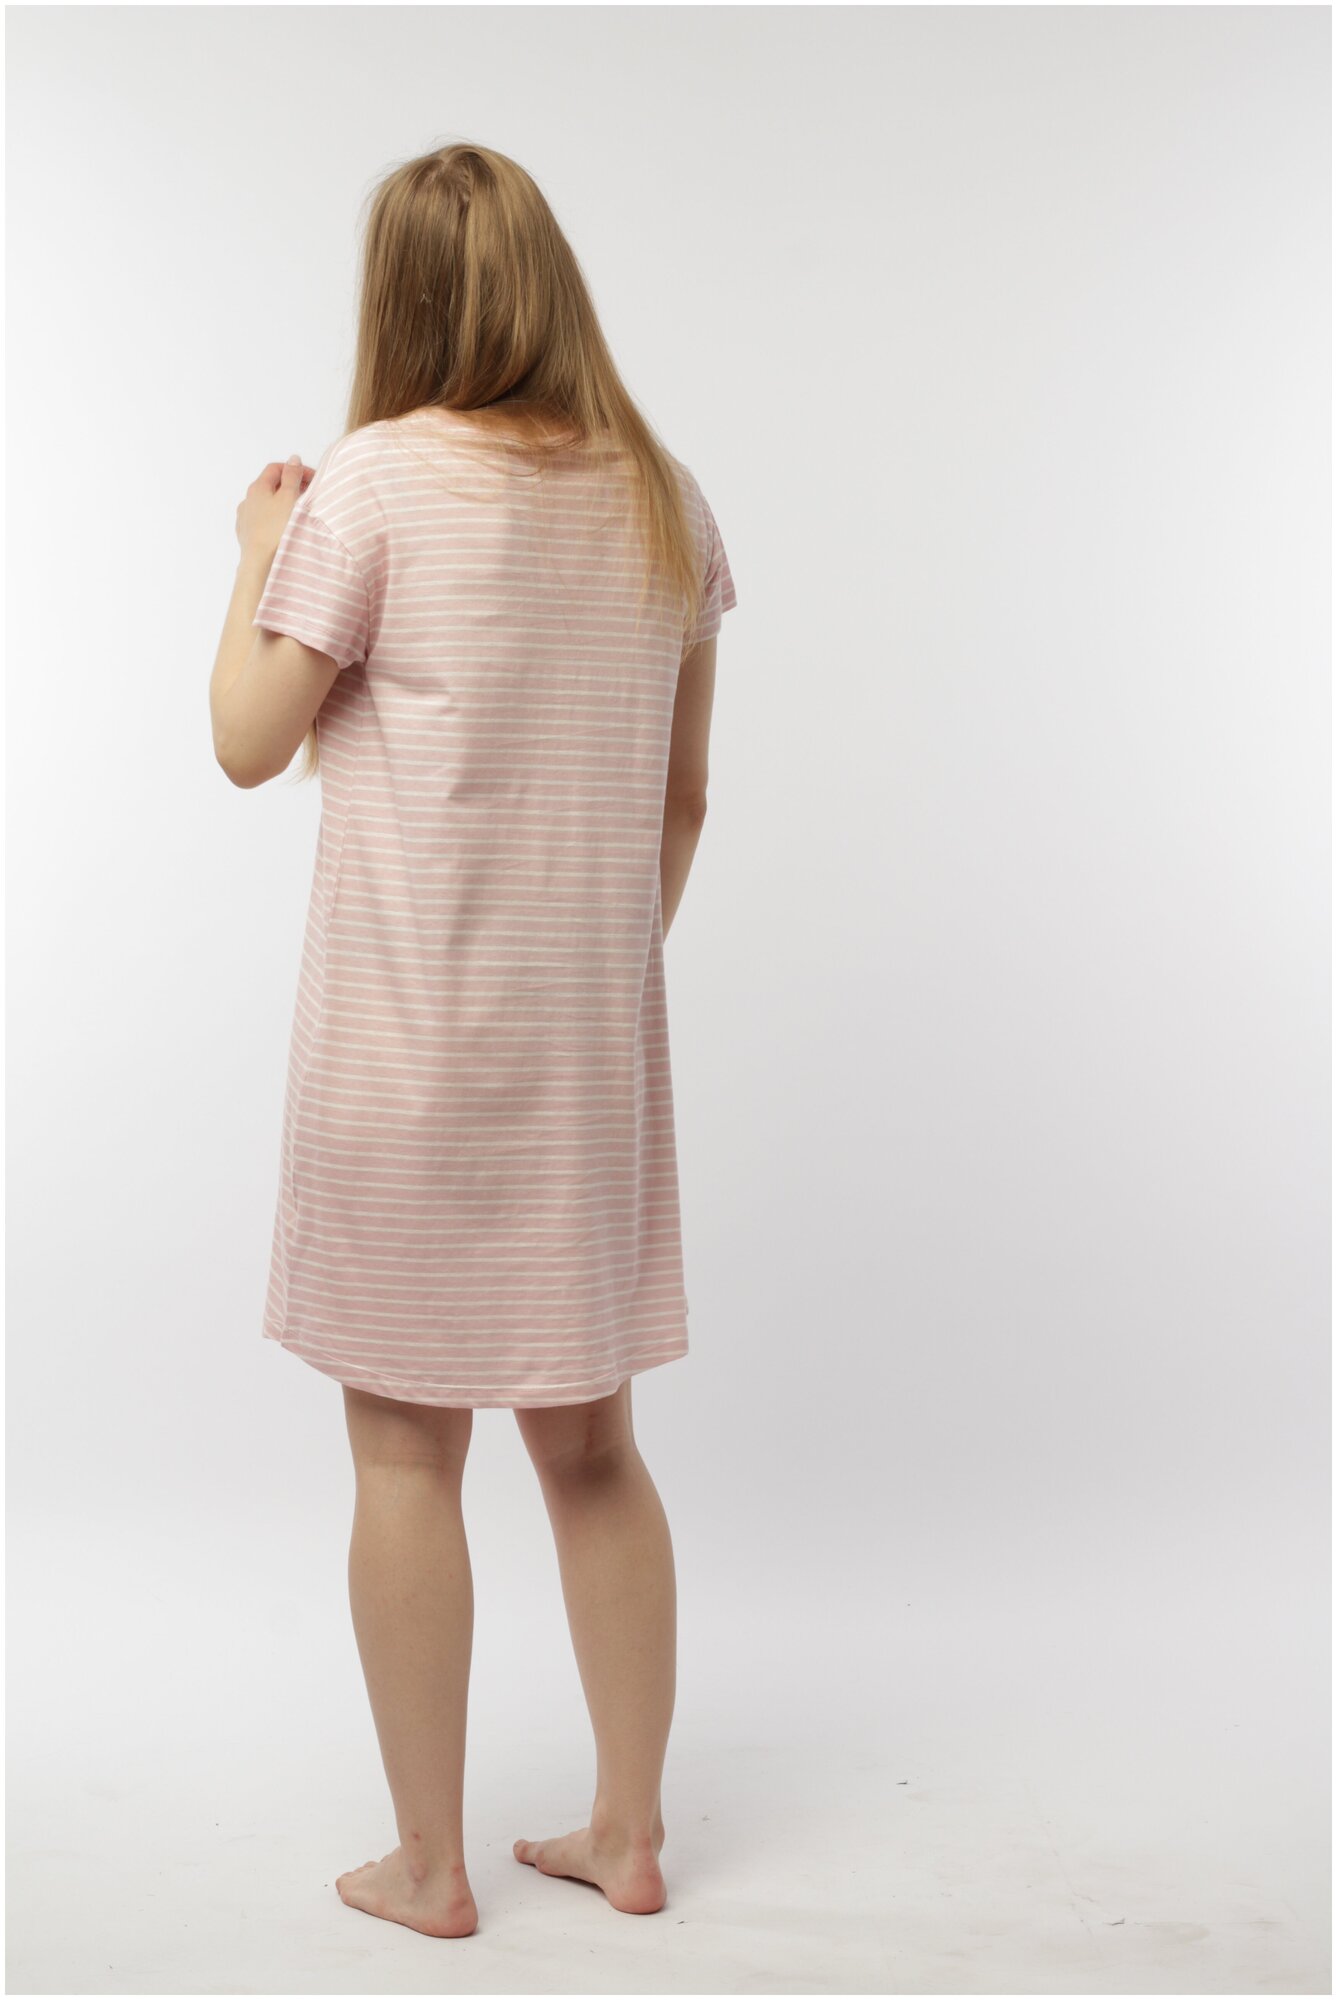 Ночная сорочка женская из хлопка Цвет розовый, размер 50-52 - фотография № 4